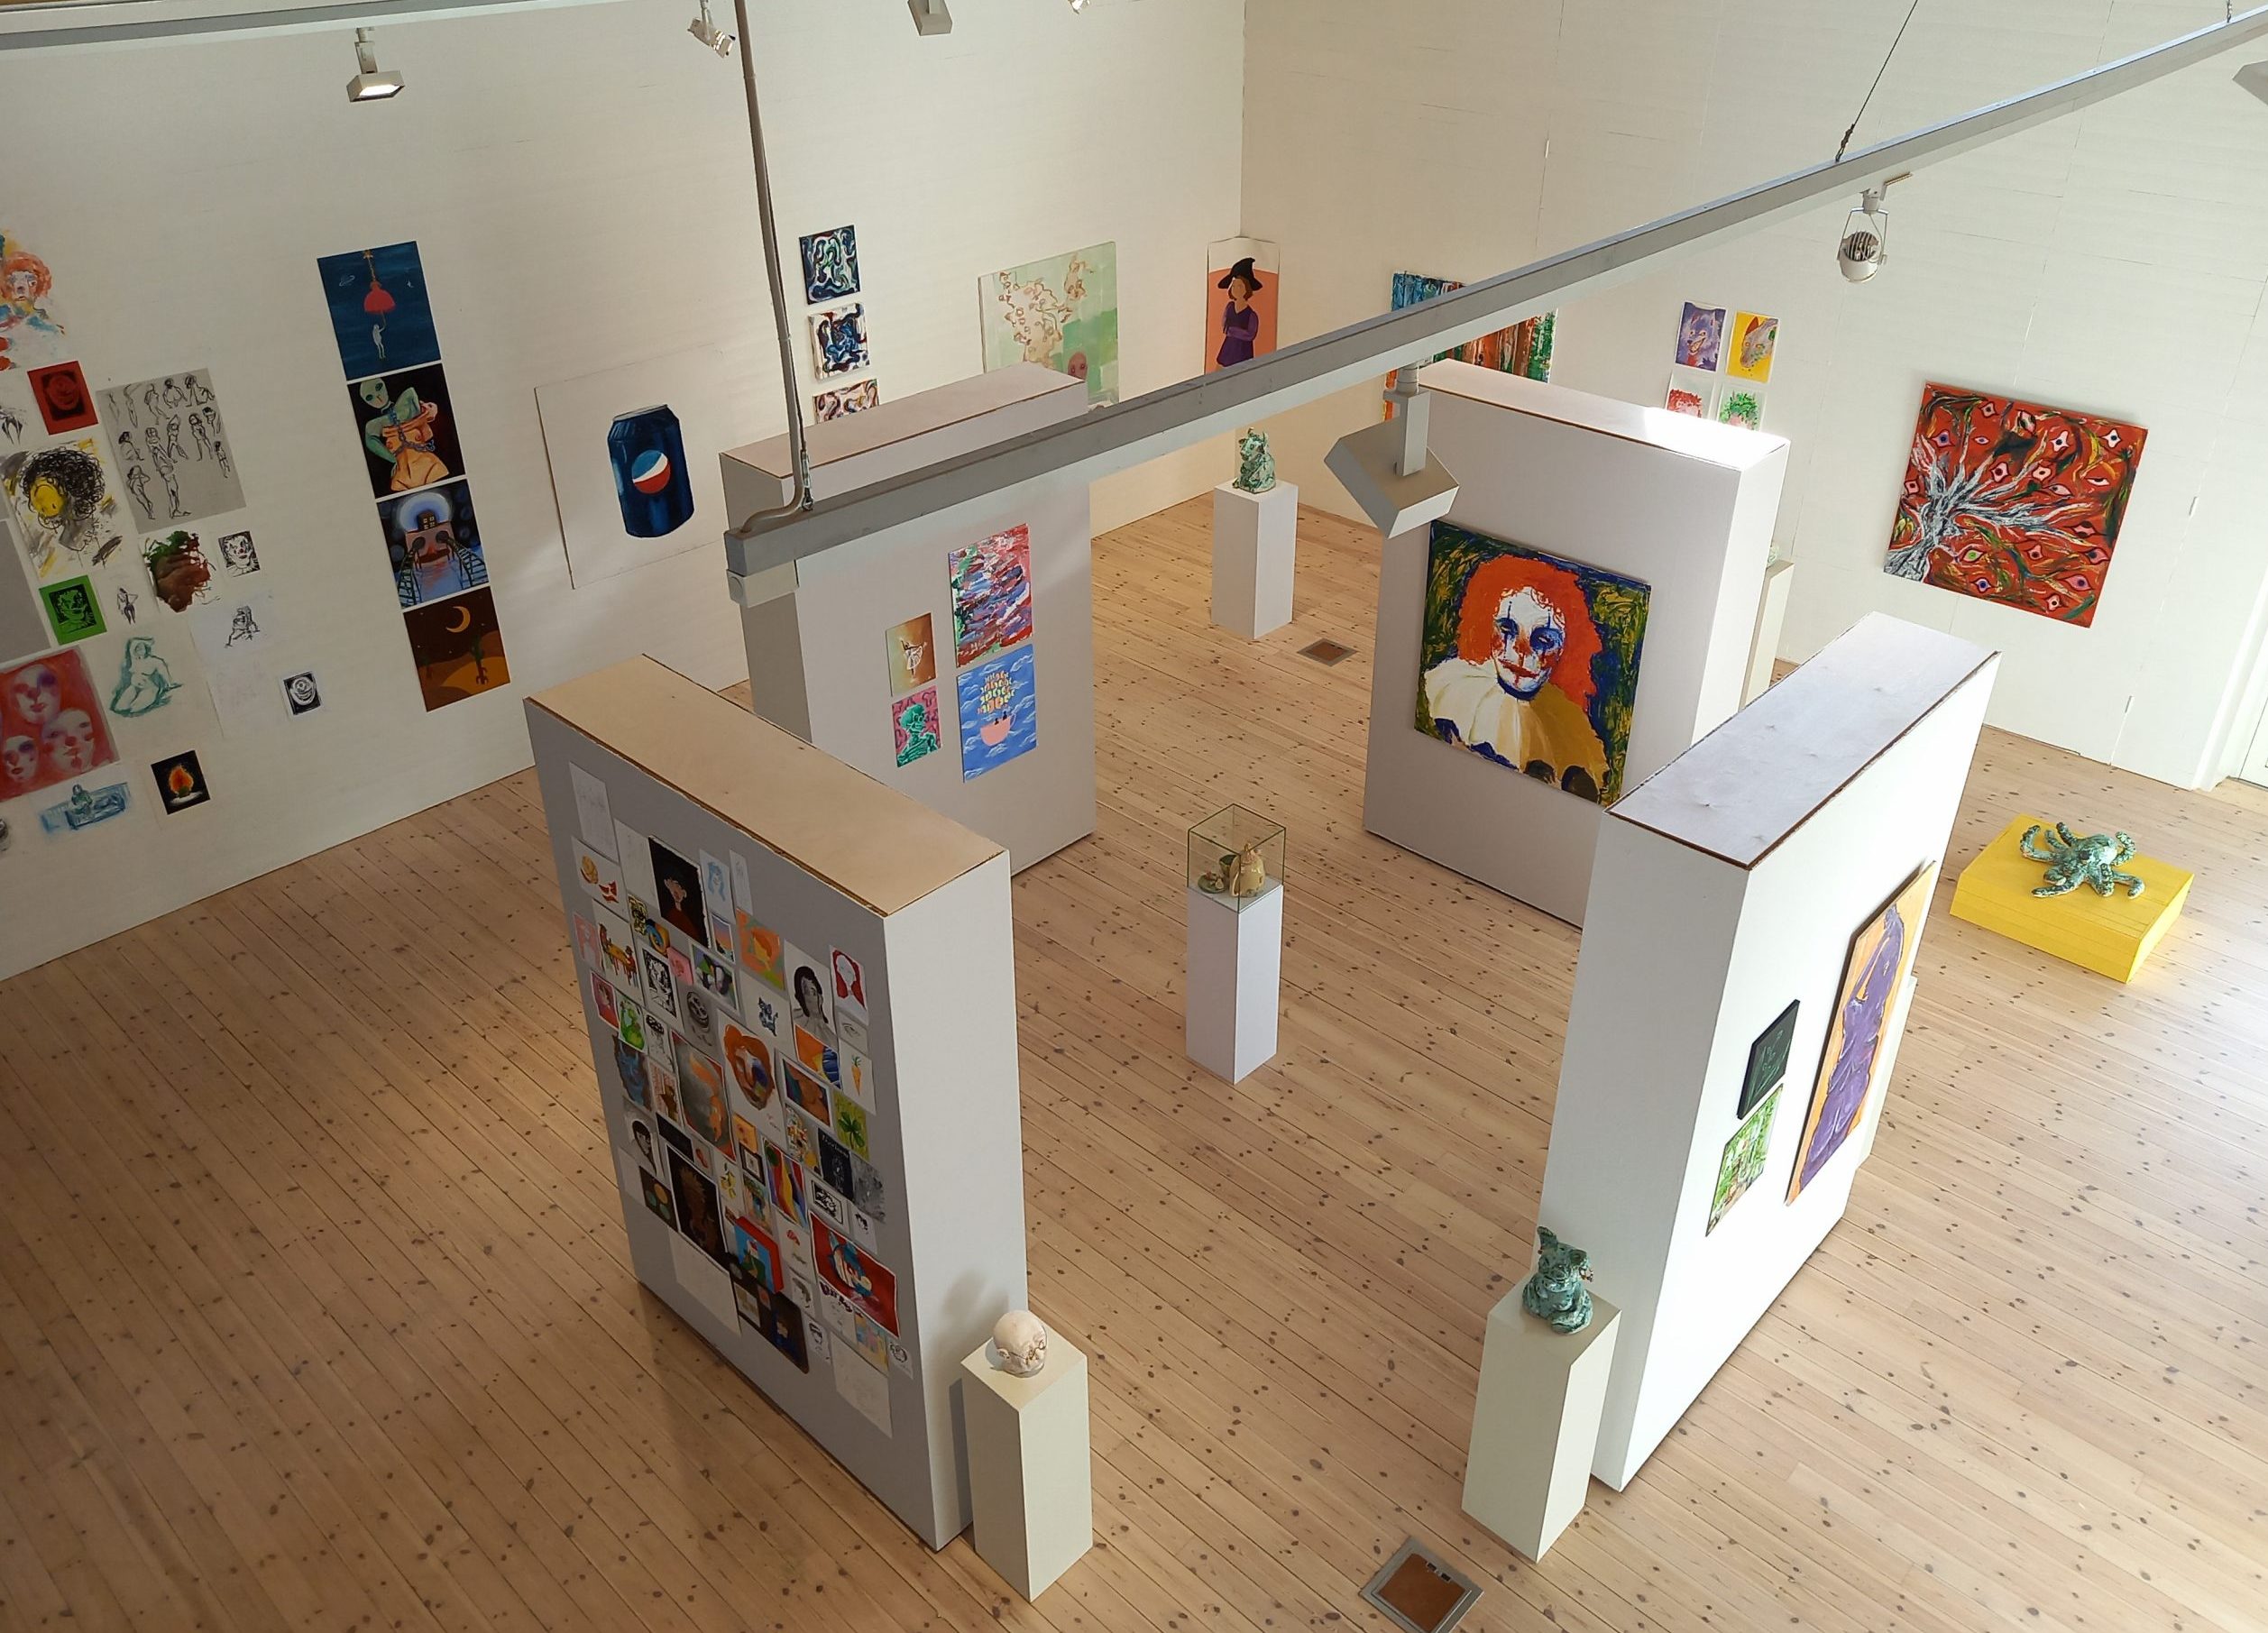 Foto. Överblick av utställningsrummet som fyllts av färgrik och variationsrik konst, främst målningar men även sex skulpturer går att se.